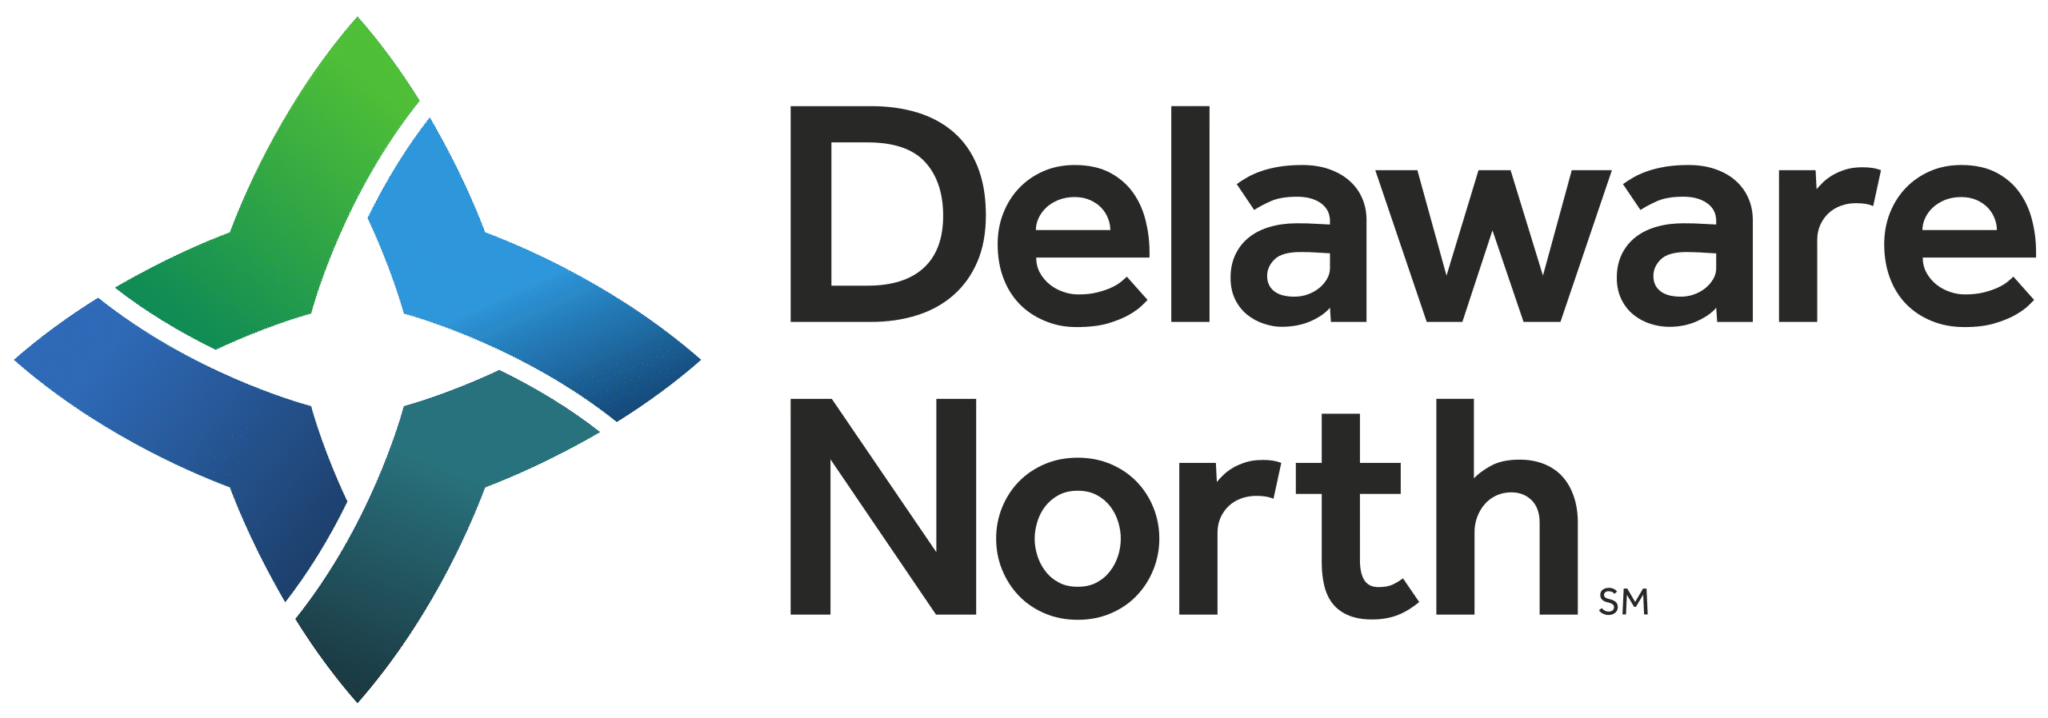 Logotipo de Delaware